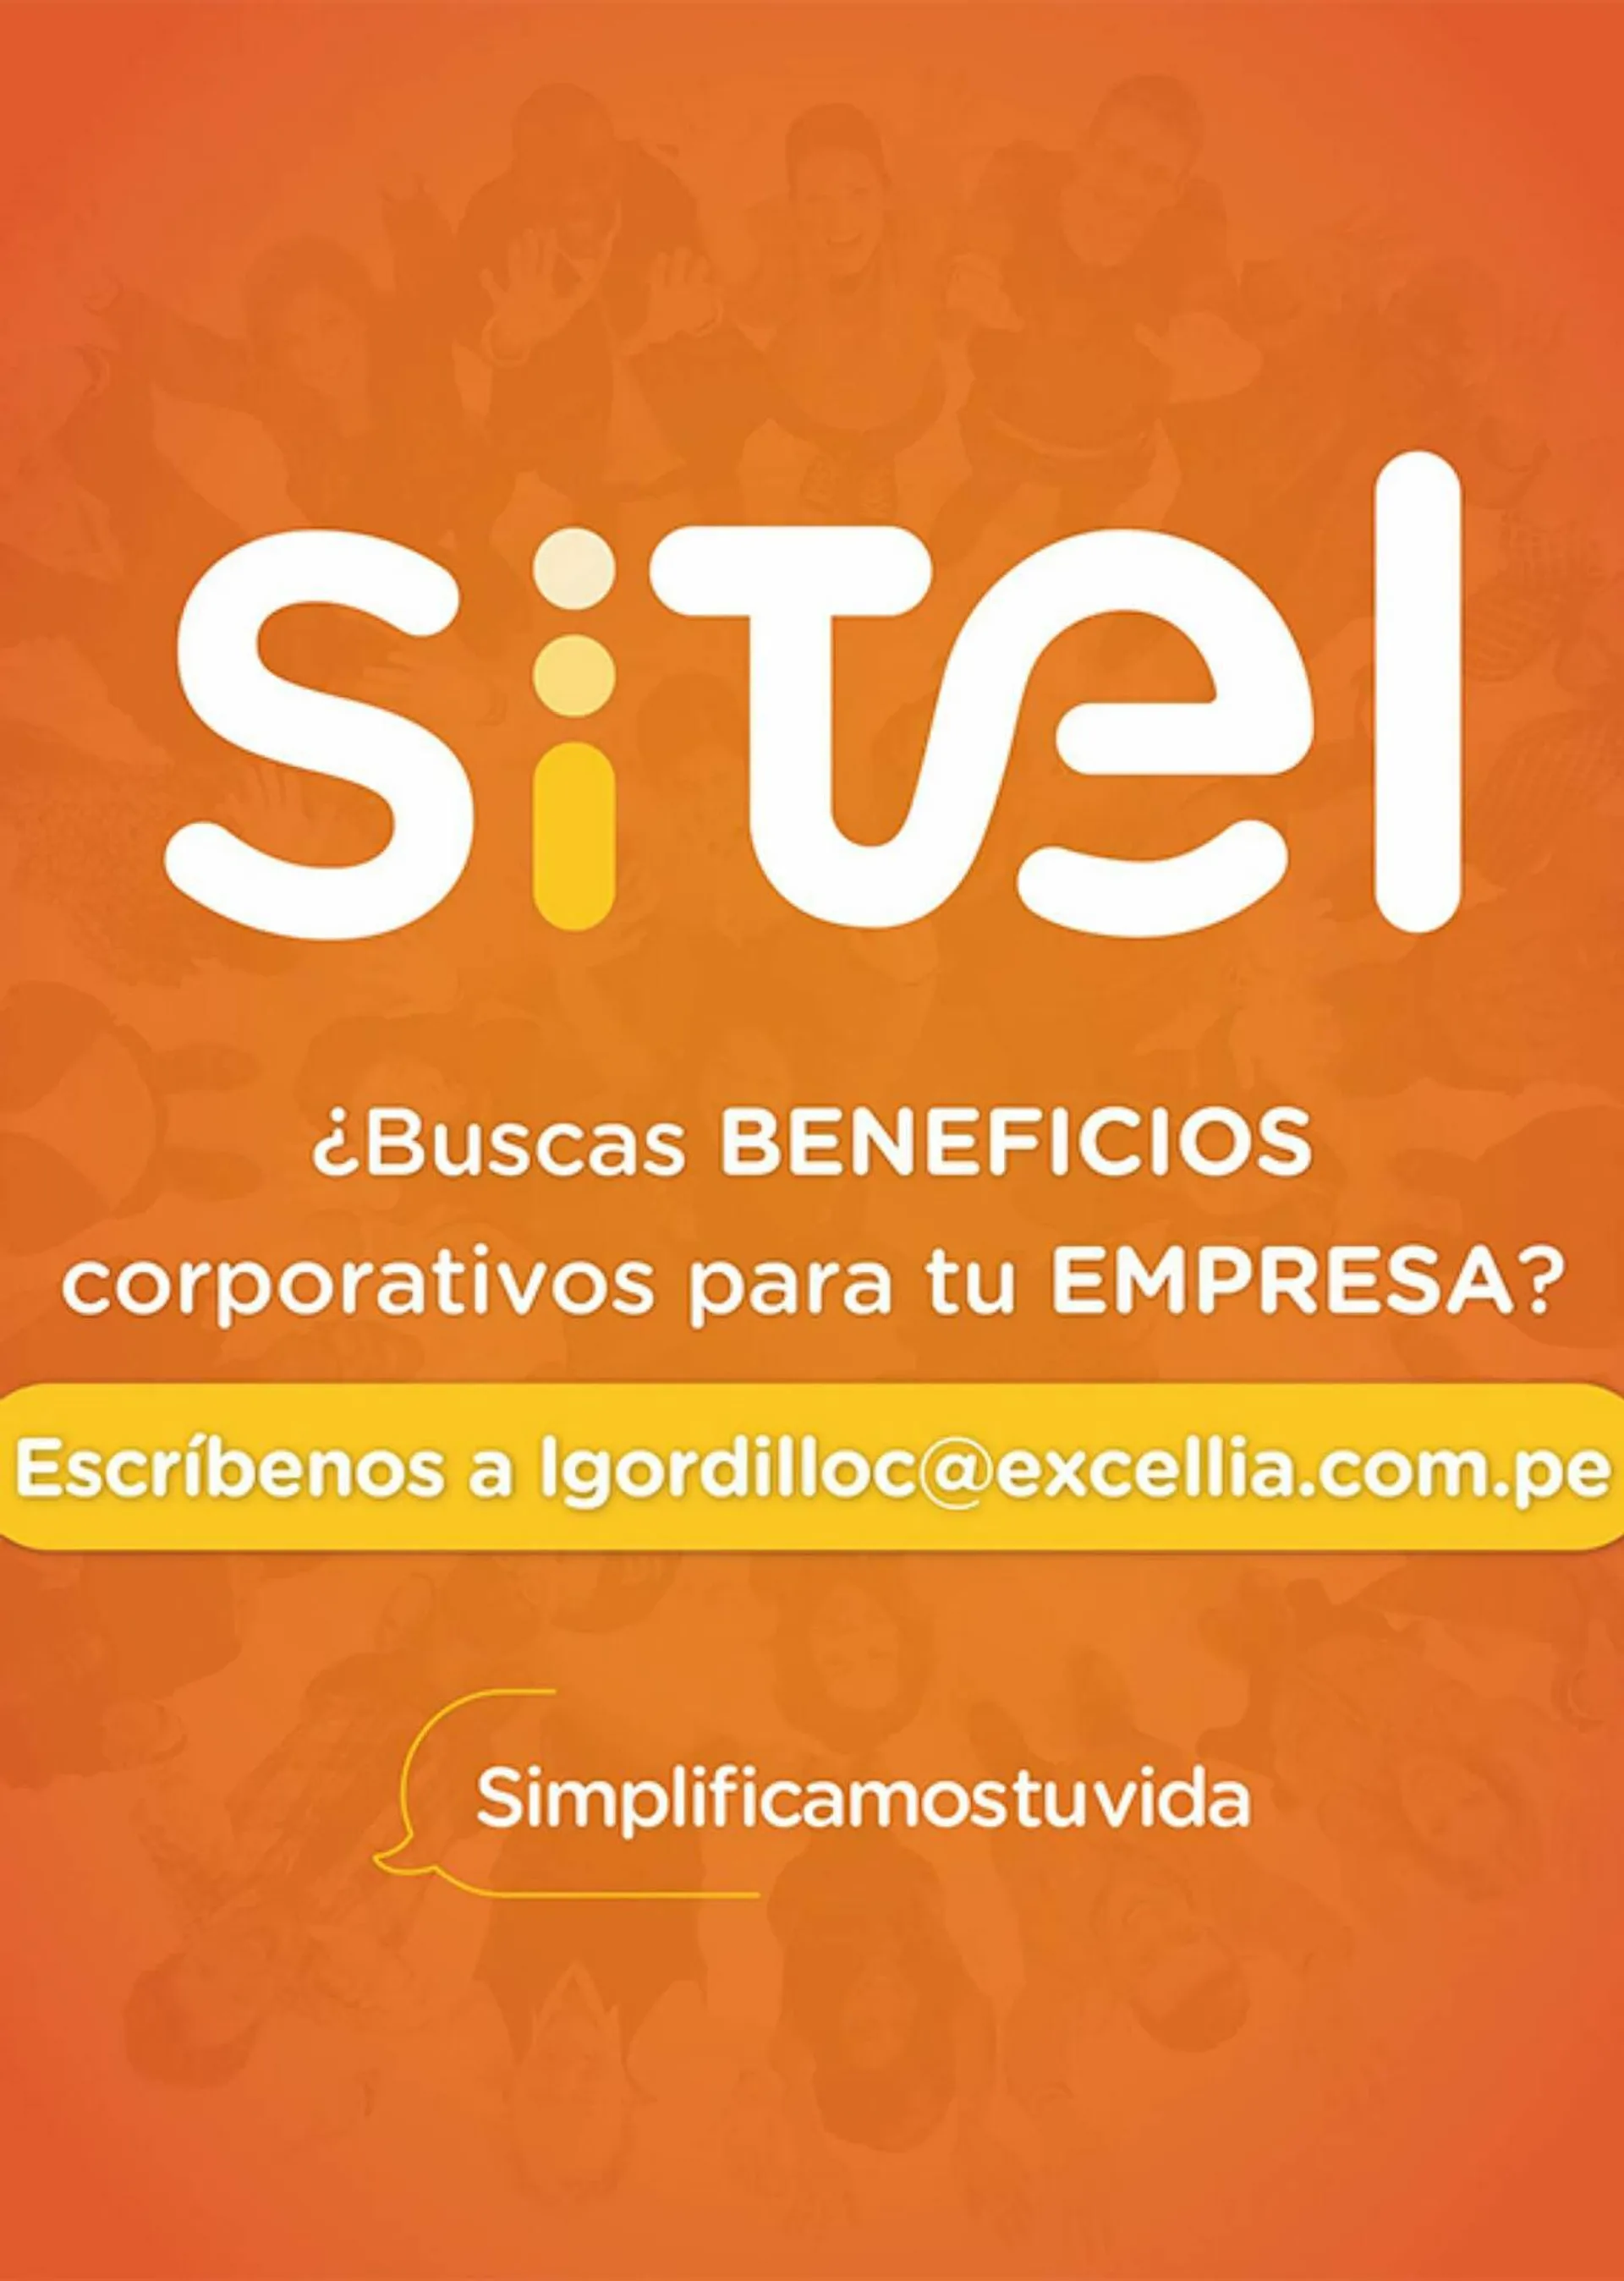 Catálogo Sitel - 1